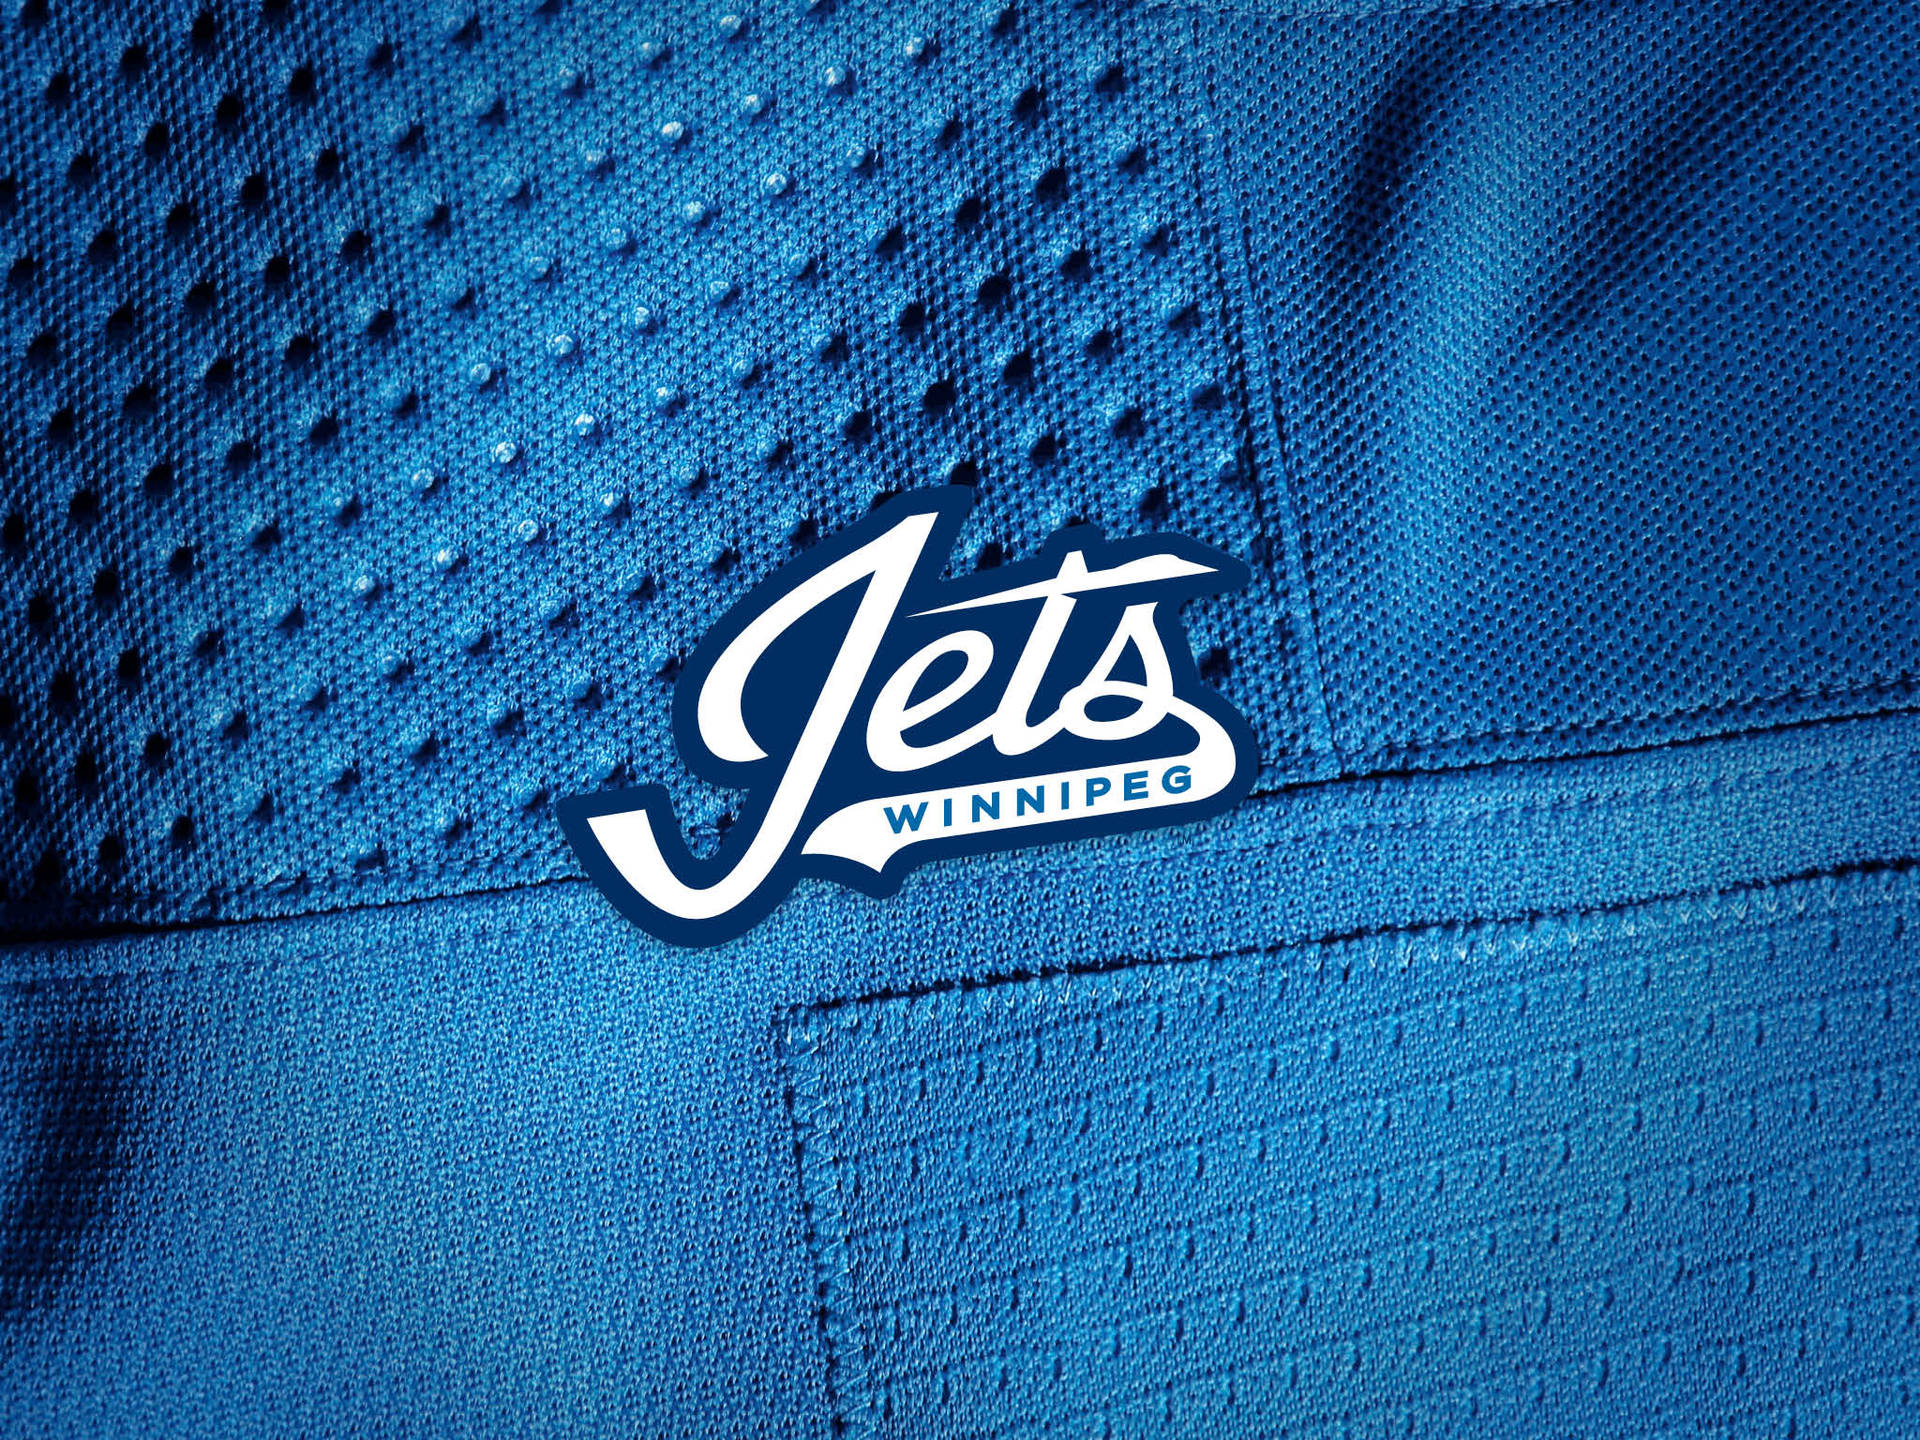 Winnipeg Jets Logo On Jersey Wallpaper